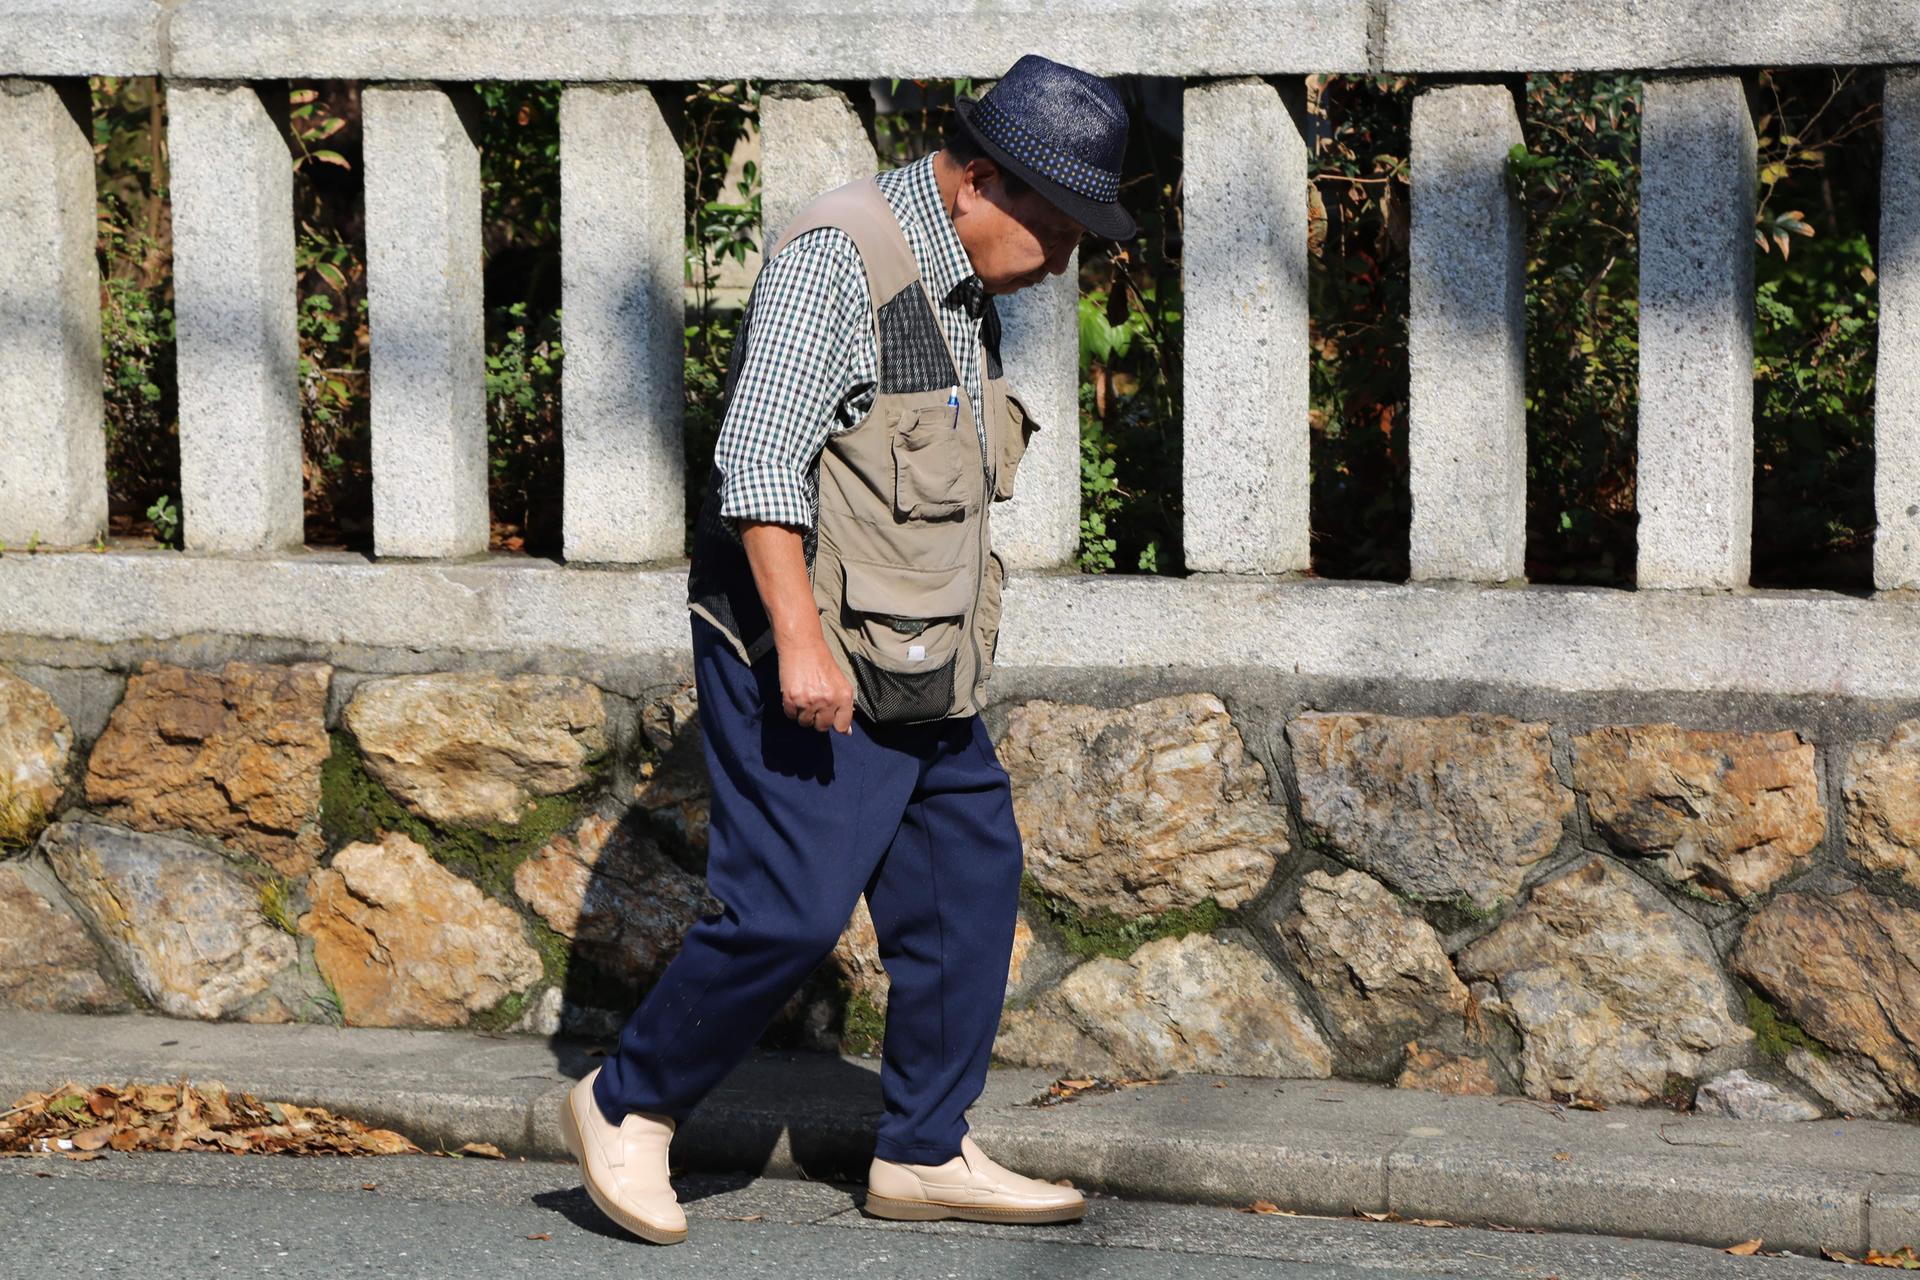 Iwao Hakamada walks in front of a fence